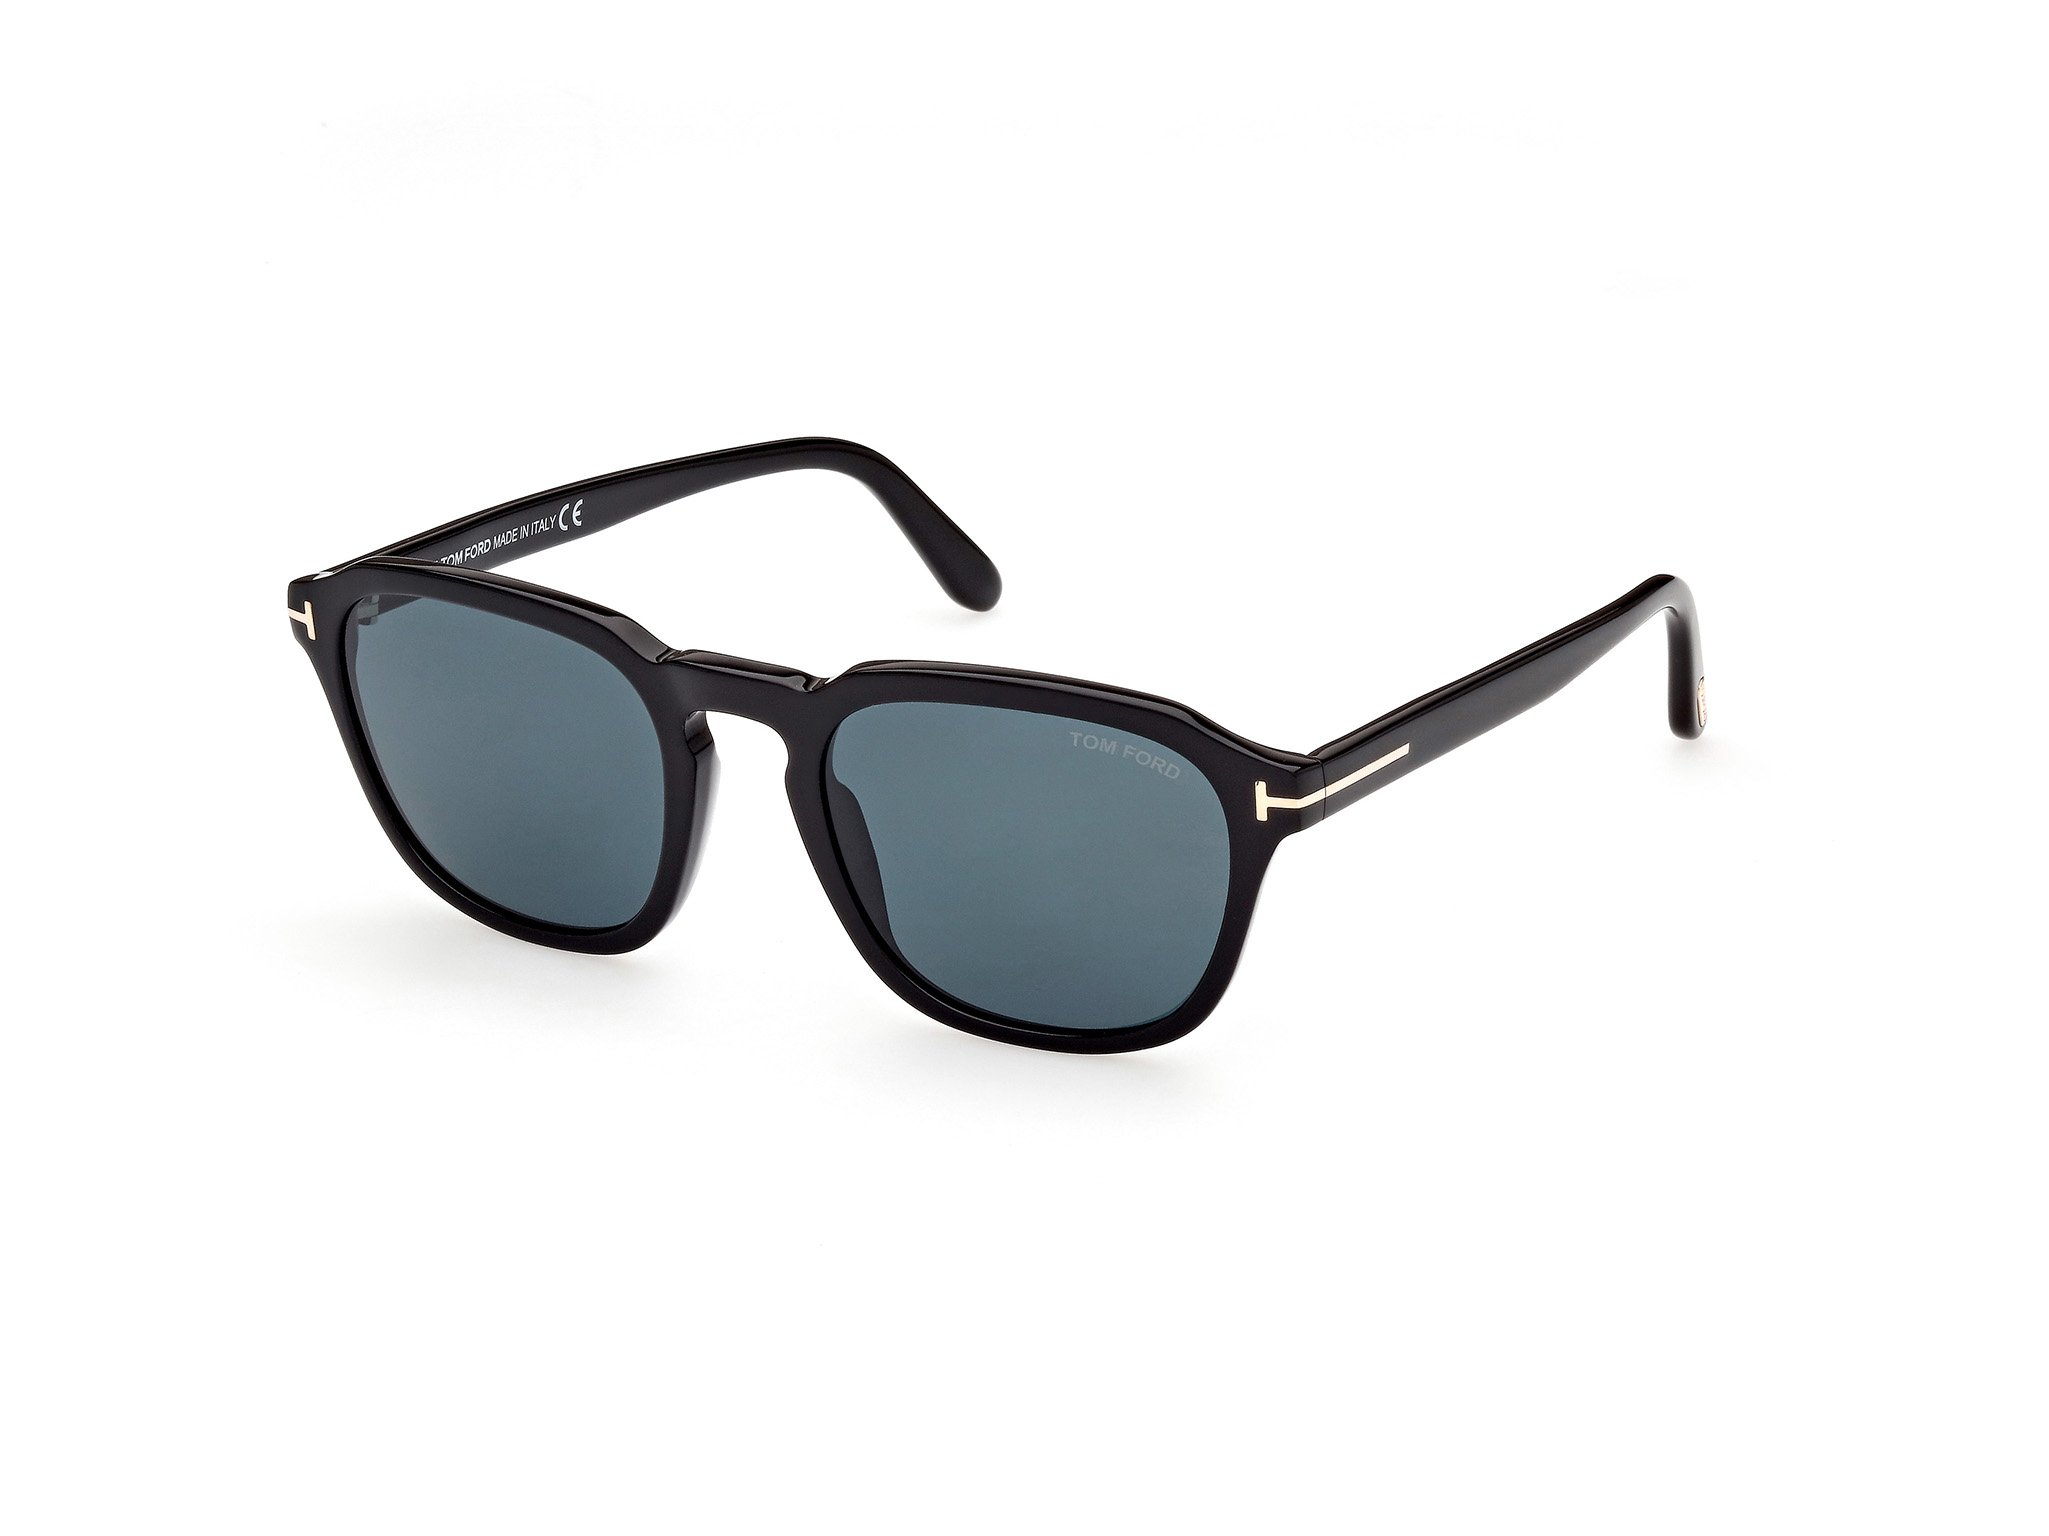 Das Bild zeigt die Sonnenbrille FT0931 der Marke Tom Ford in schwarz von  der Seite.